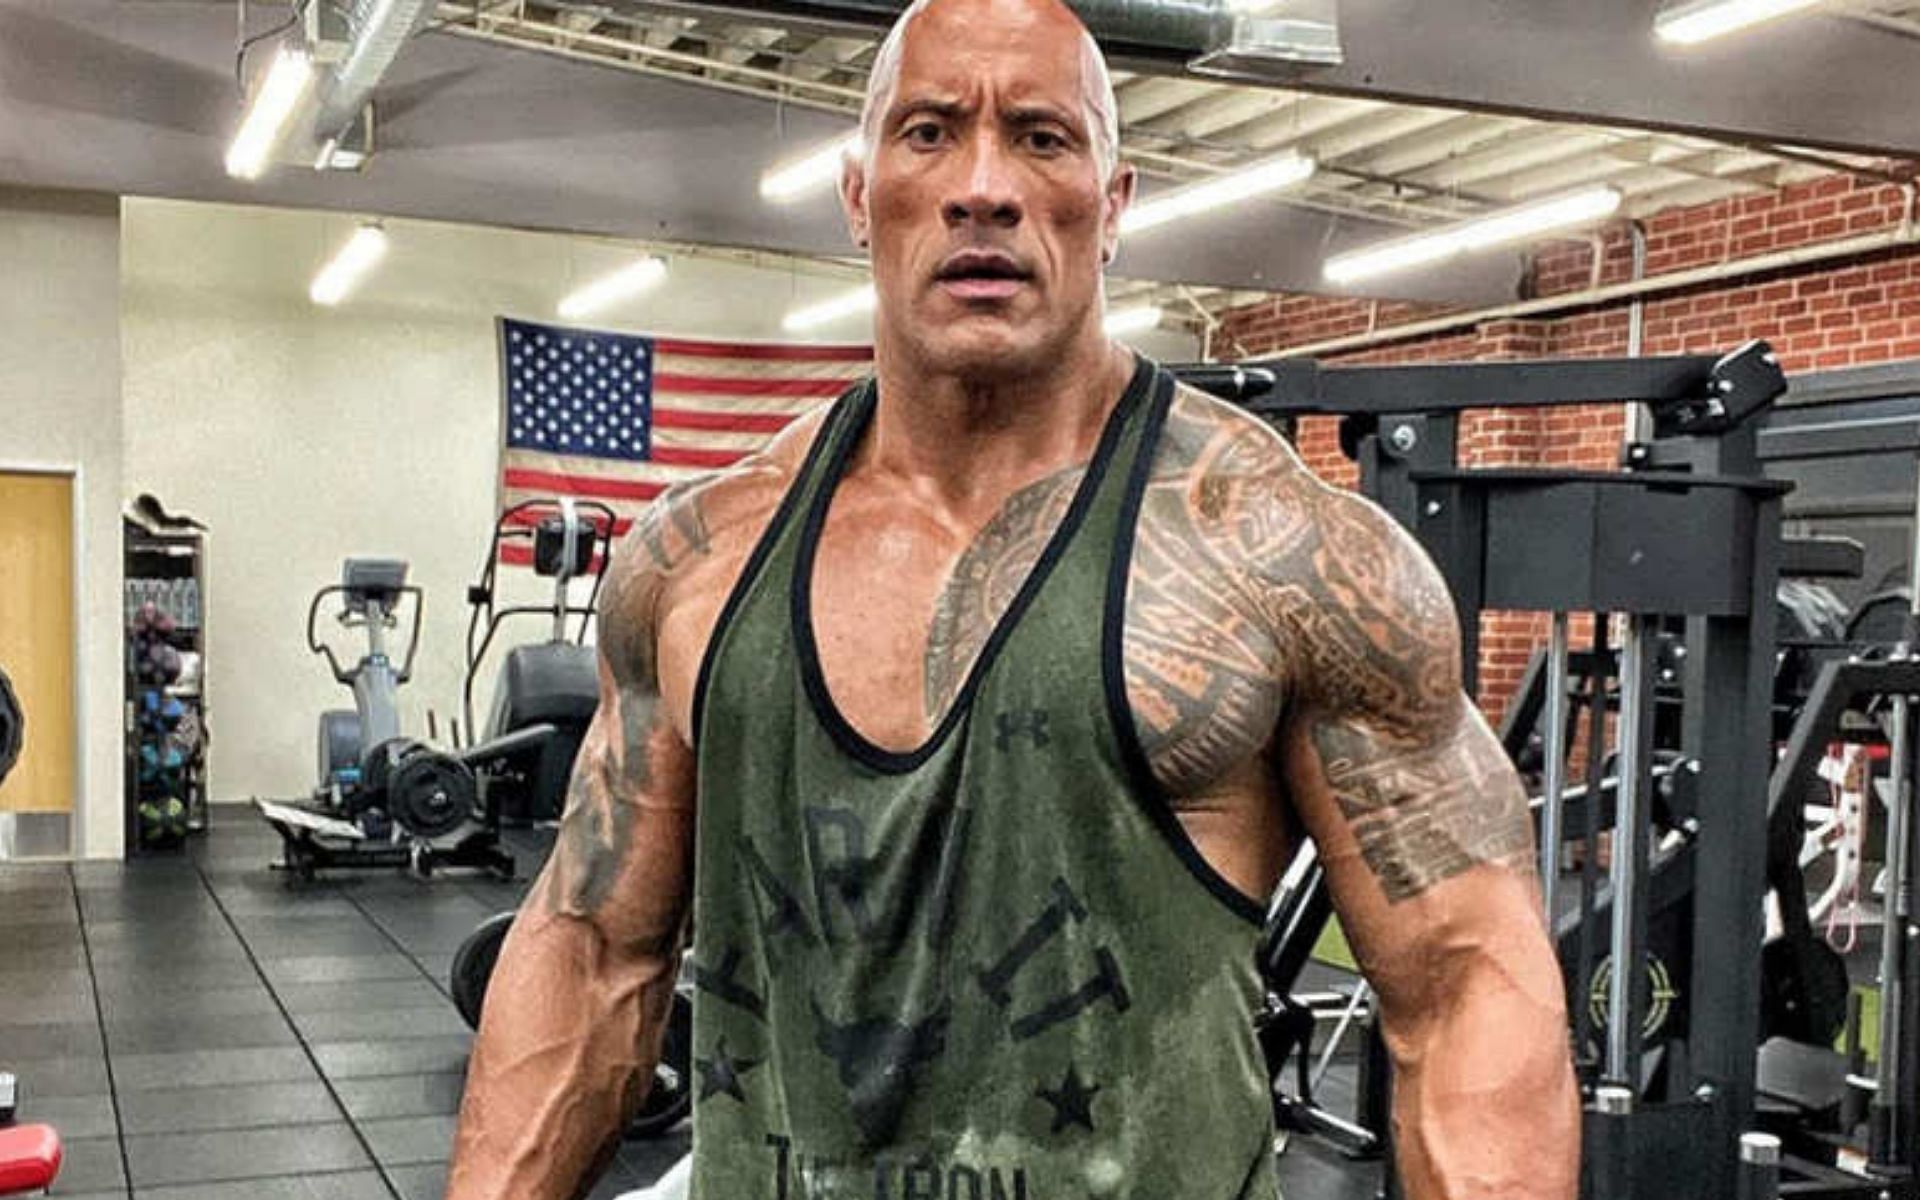 The Rock last appeared in WWE in 2019